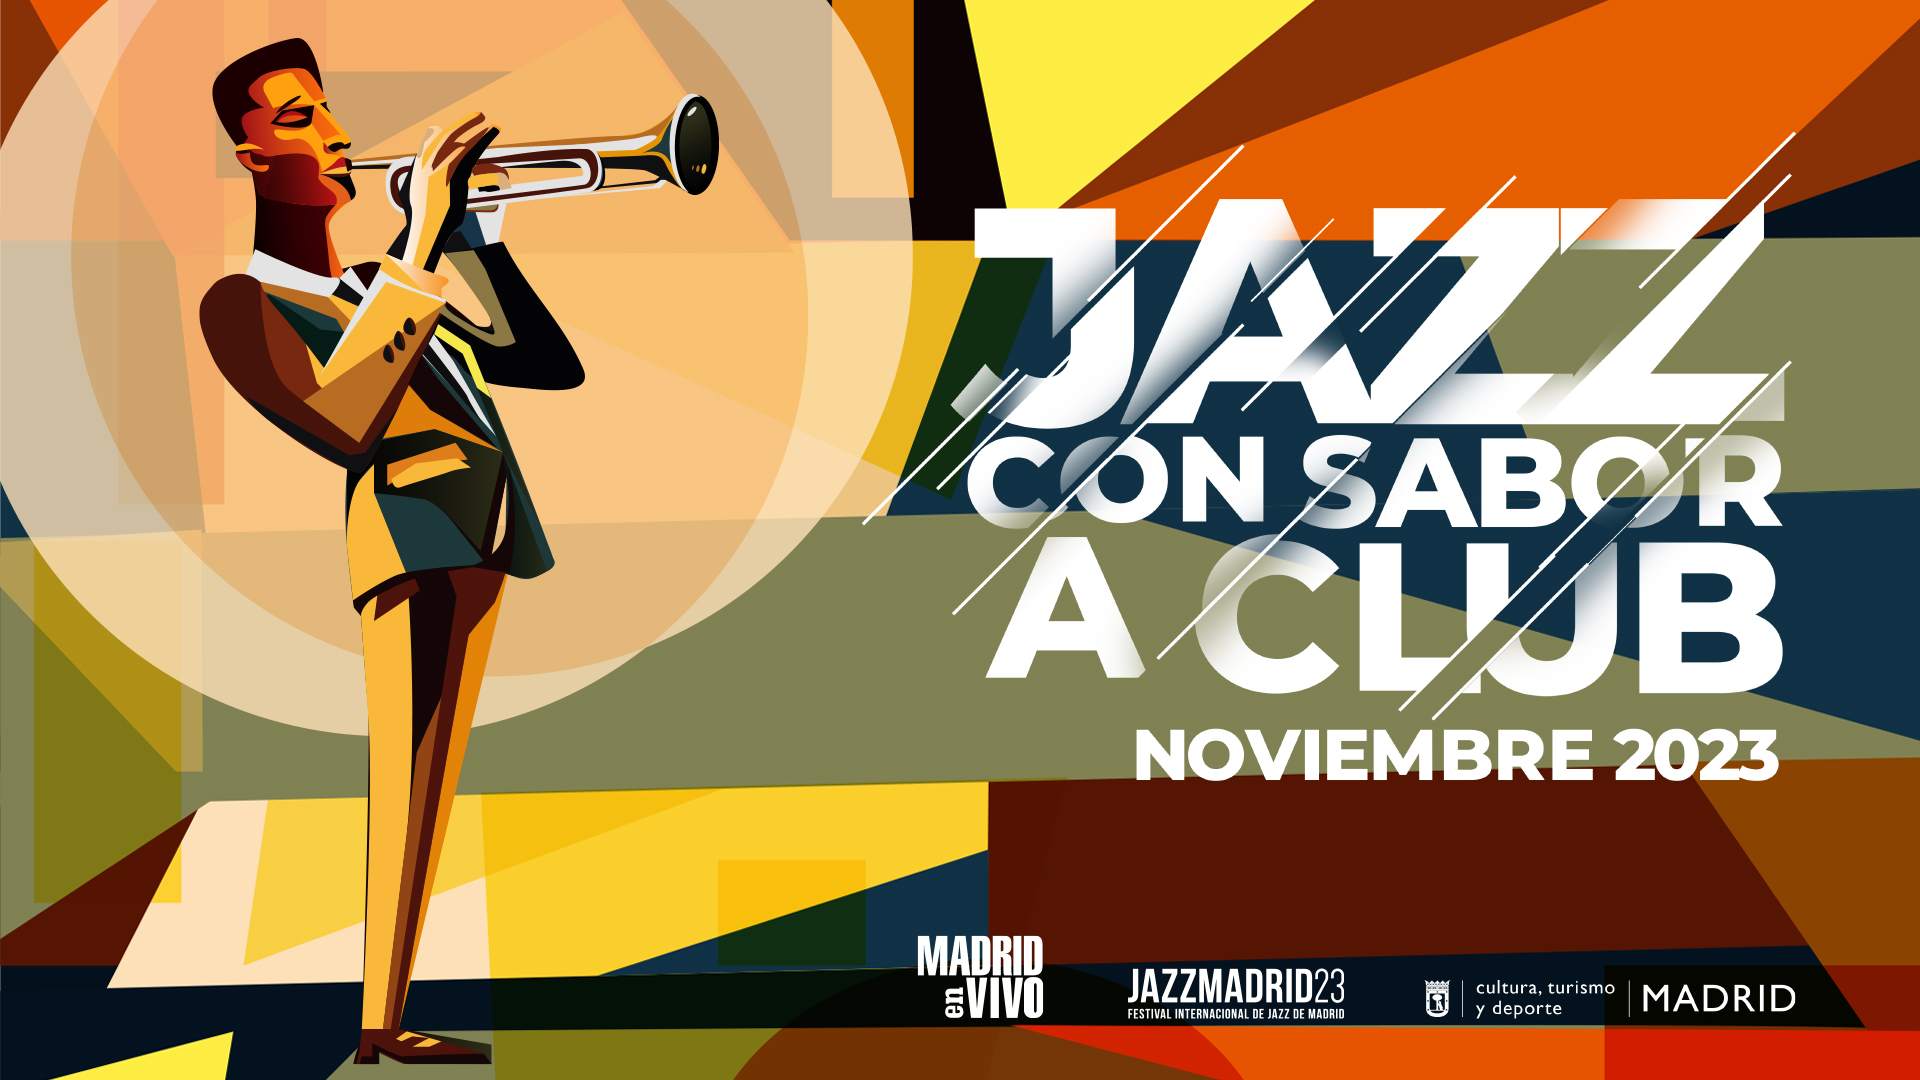 Jazz con Sabor a Club 2023 